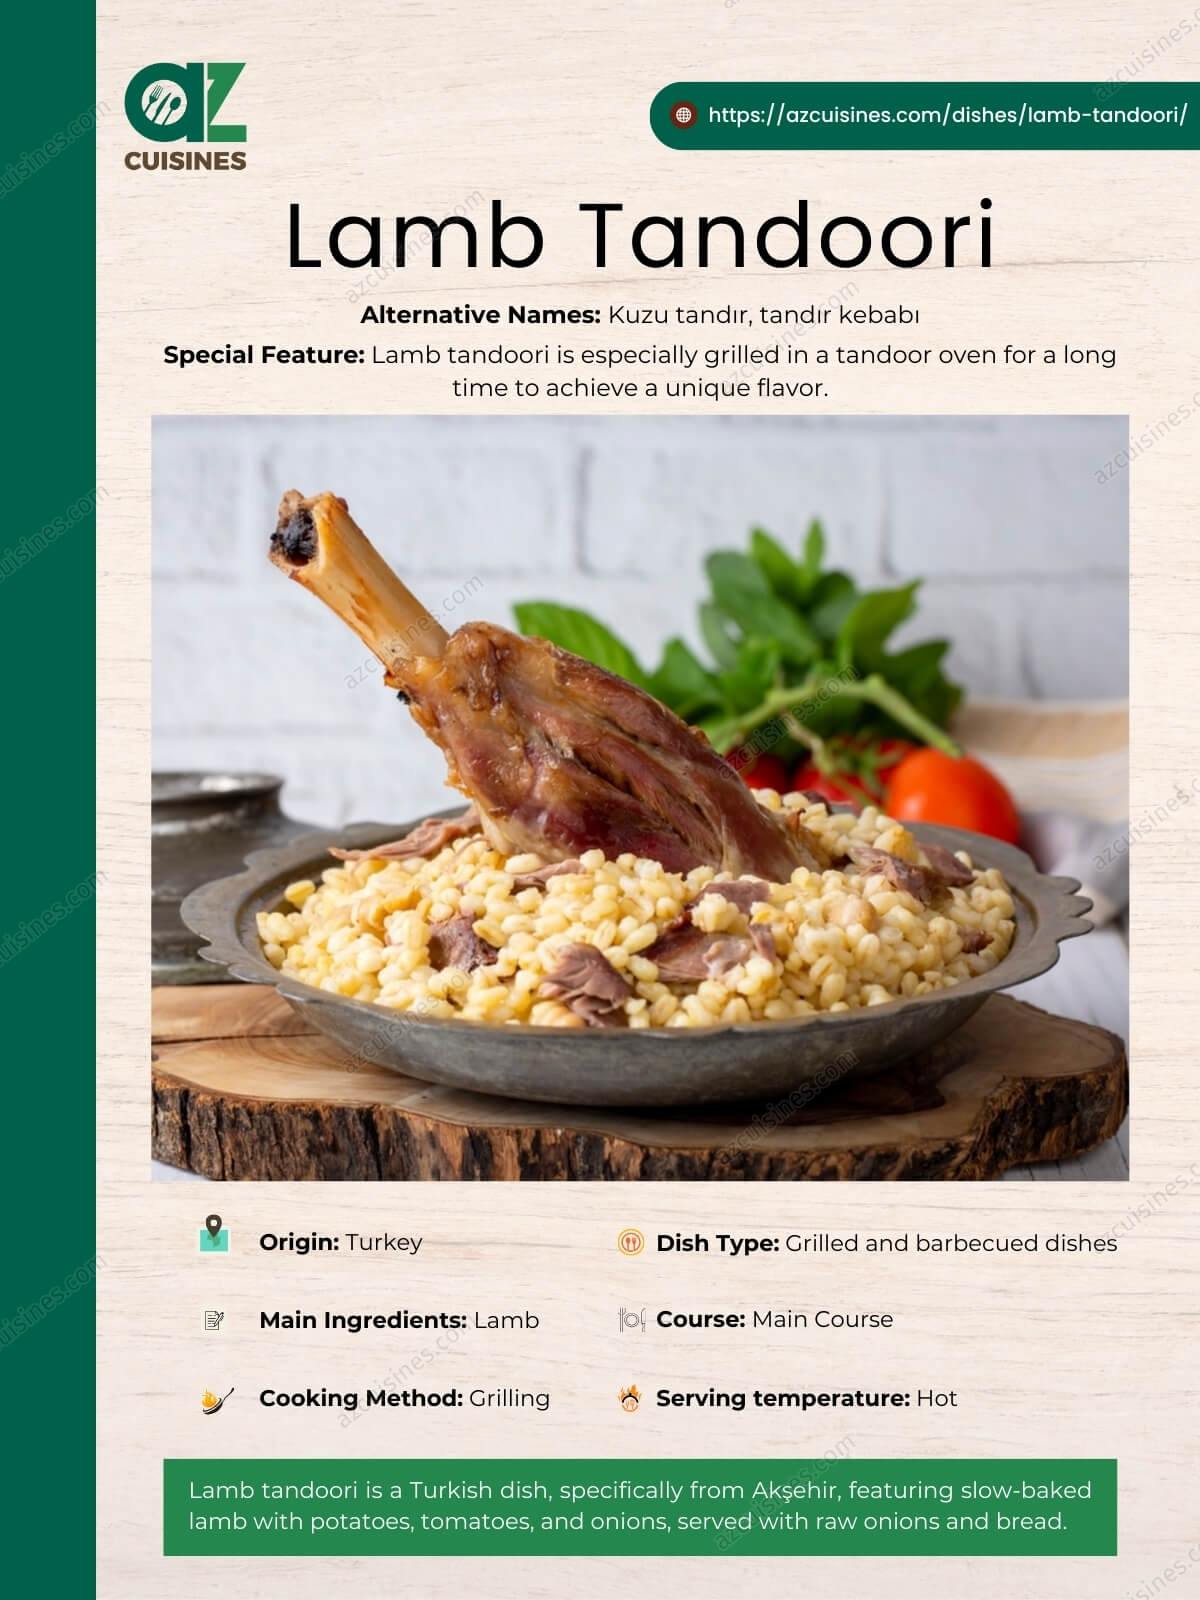 Lamb Tandoori Overview